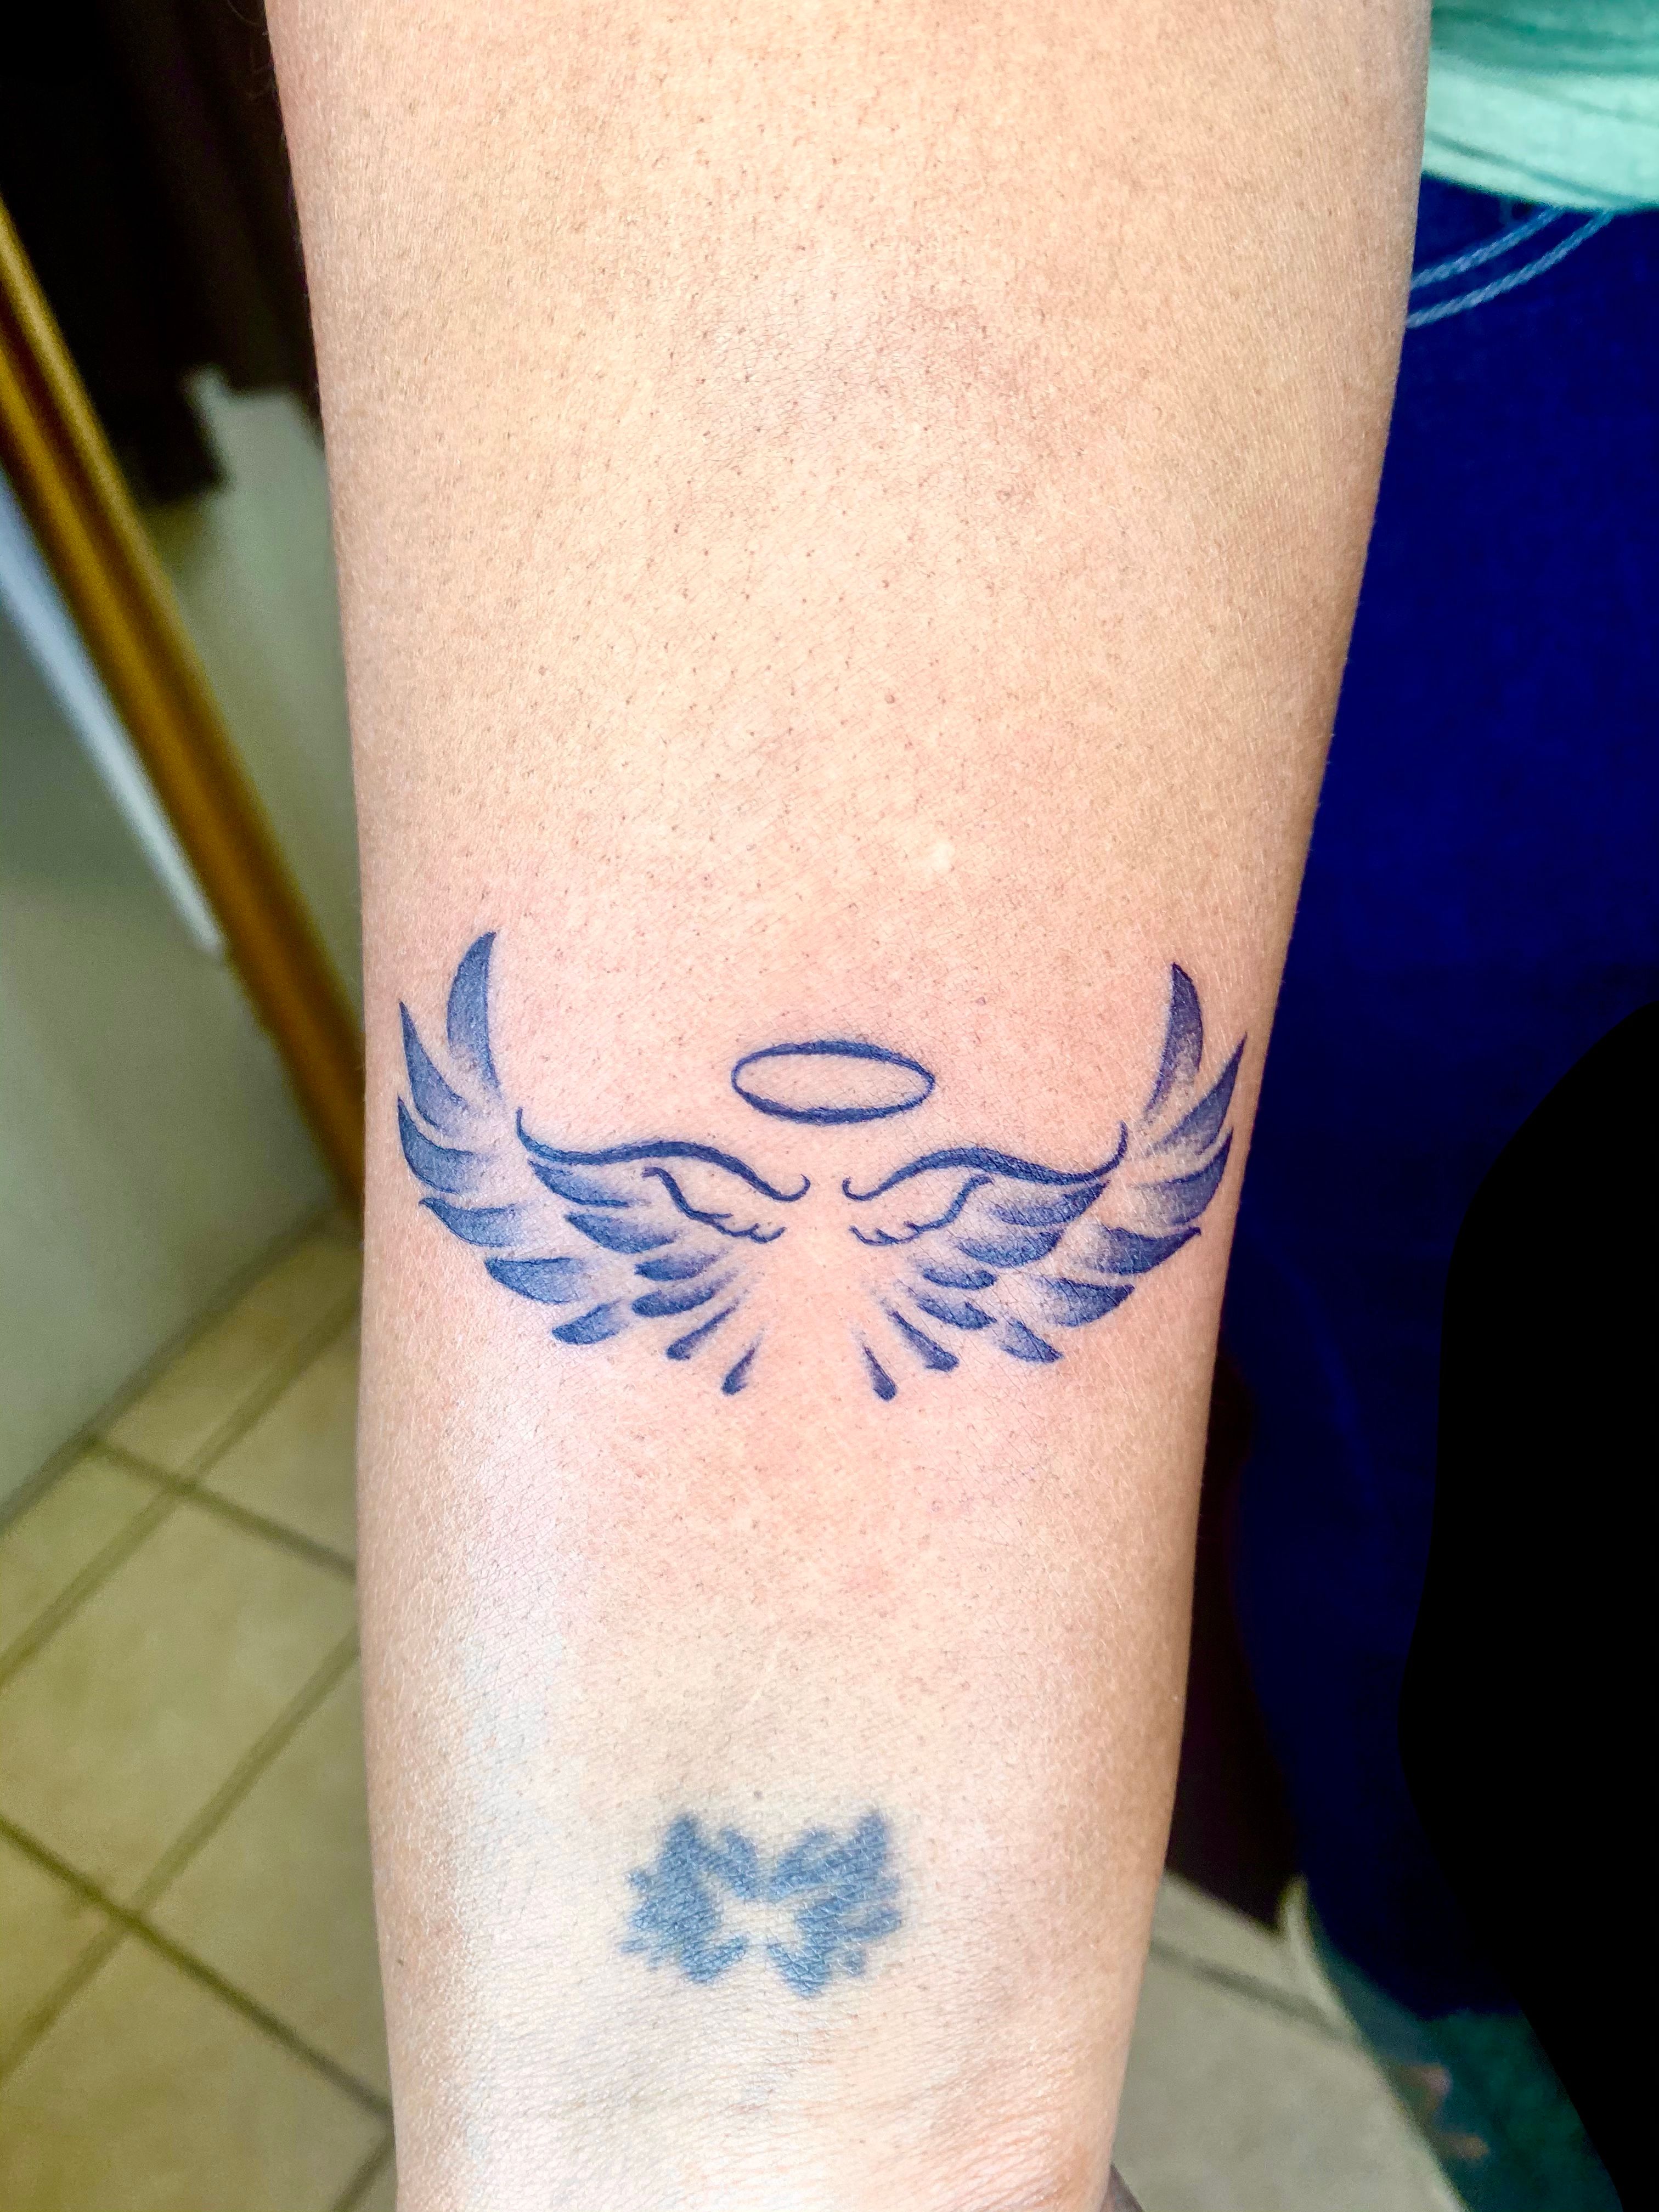 Wings with Arrow Tattoo | Tattoos, Arrow tattoo, Cool tattoos